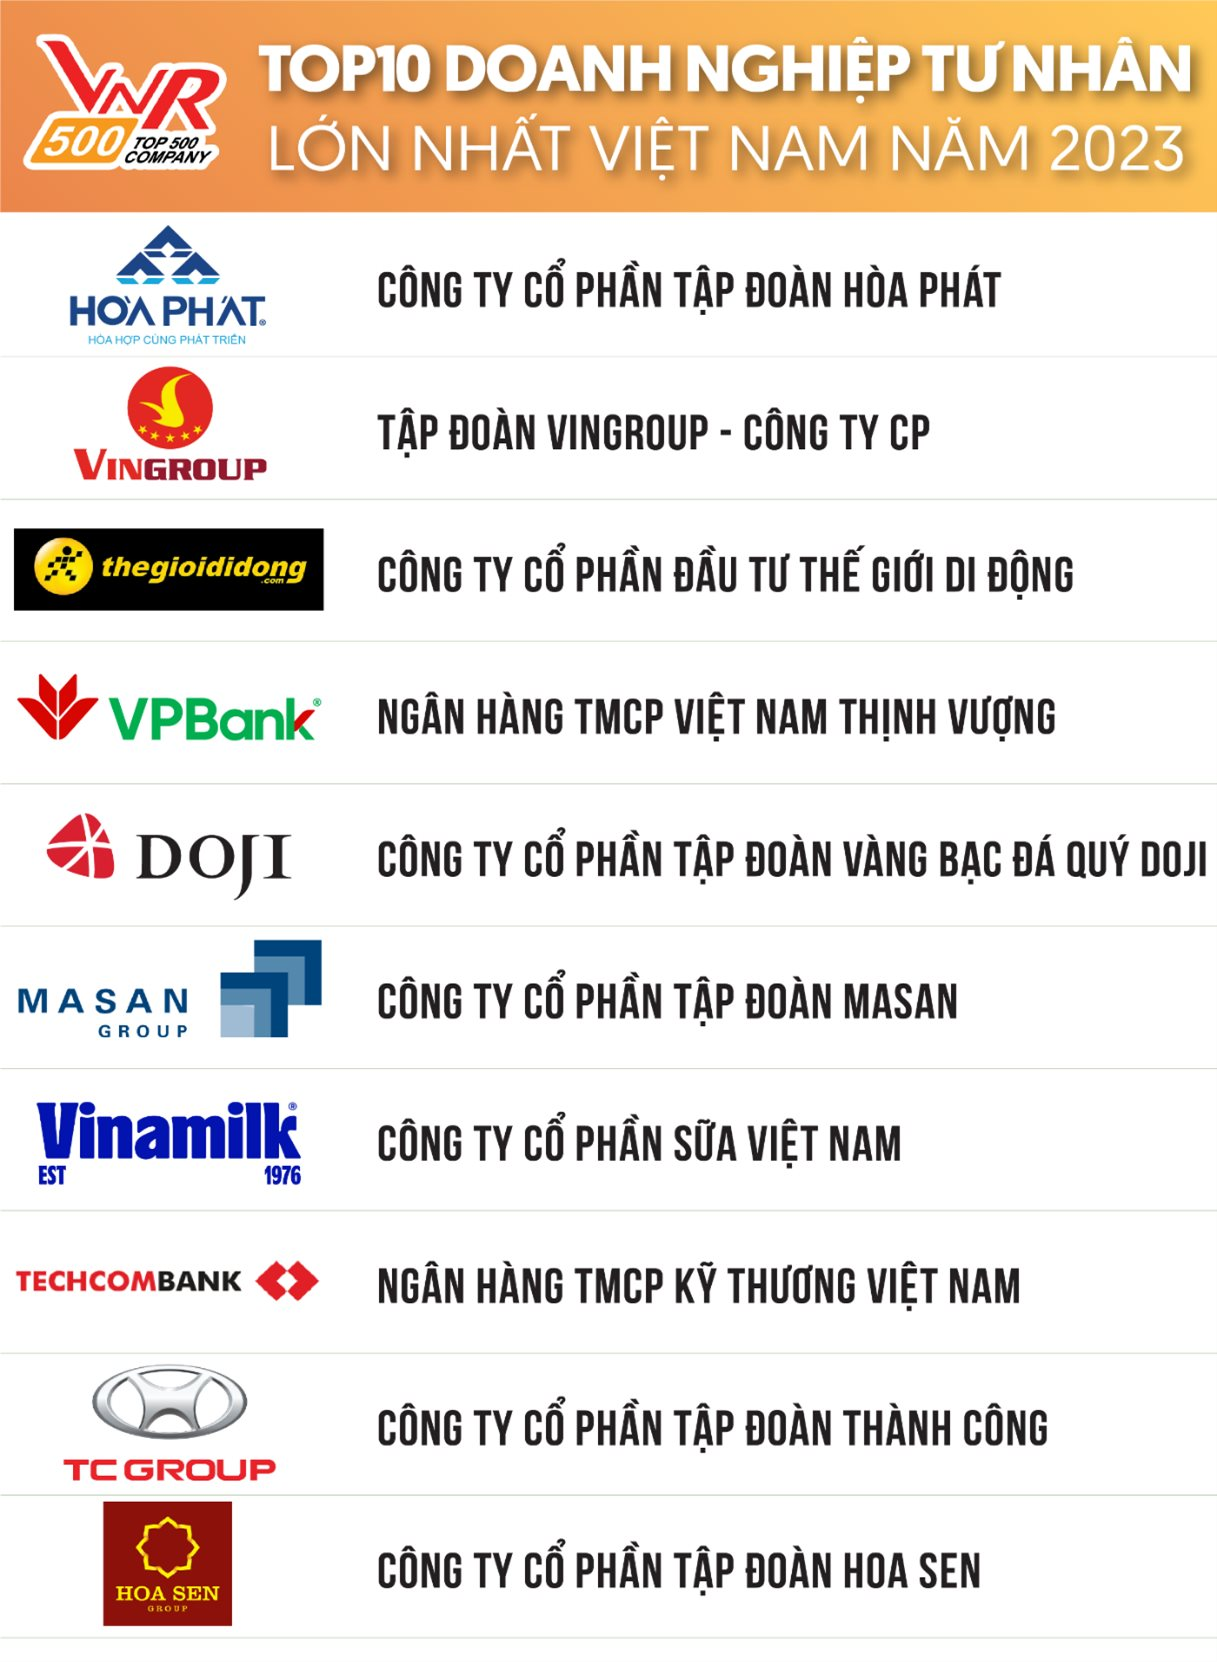 Hòa Phát vẫn đứng trên Vingroup, THACO 'bay' khỏi Top 10 DN tư nhân lớn nhất Việt Nam năm 2023 - Ảnh 1.